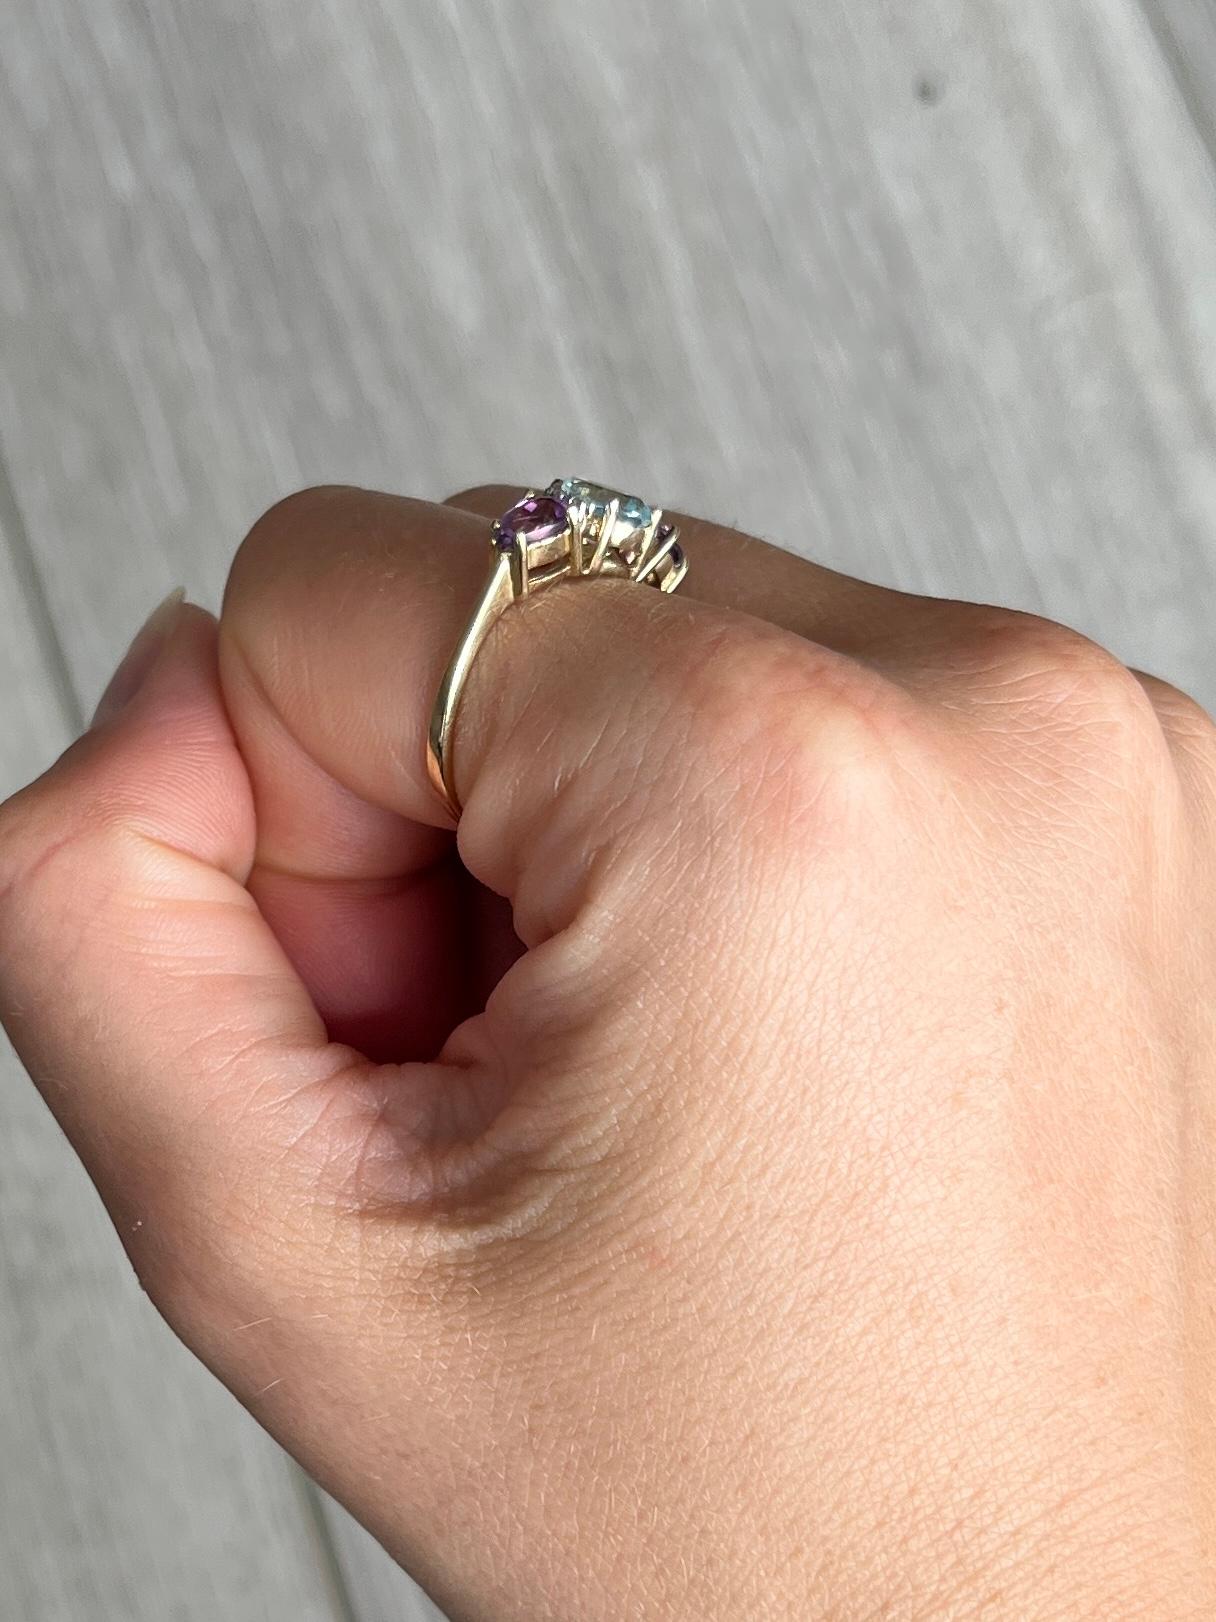 Die beiden lilafarbenen Amethyste haben zusammen ca. 60 Punkte und der Aqua-Stein 75 Punkte. Es gibt ein Paar von Diamanten auf beiden Seiten des zentralen Steins, die 8pts messen. Der Ring ist aus 9-karätigem Gold modelliert.

Ringgröße: P oder 7